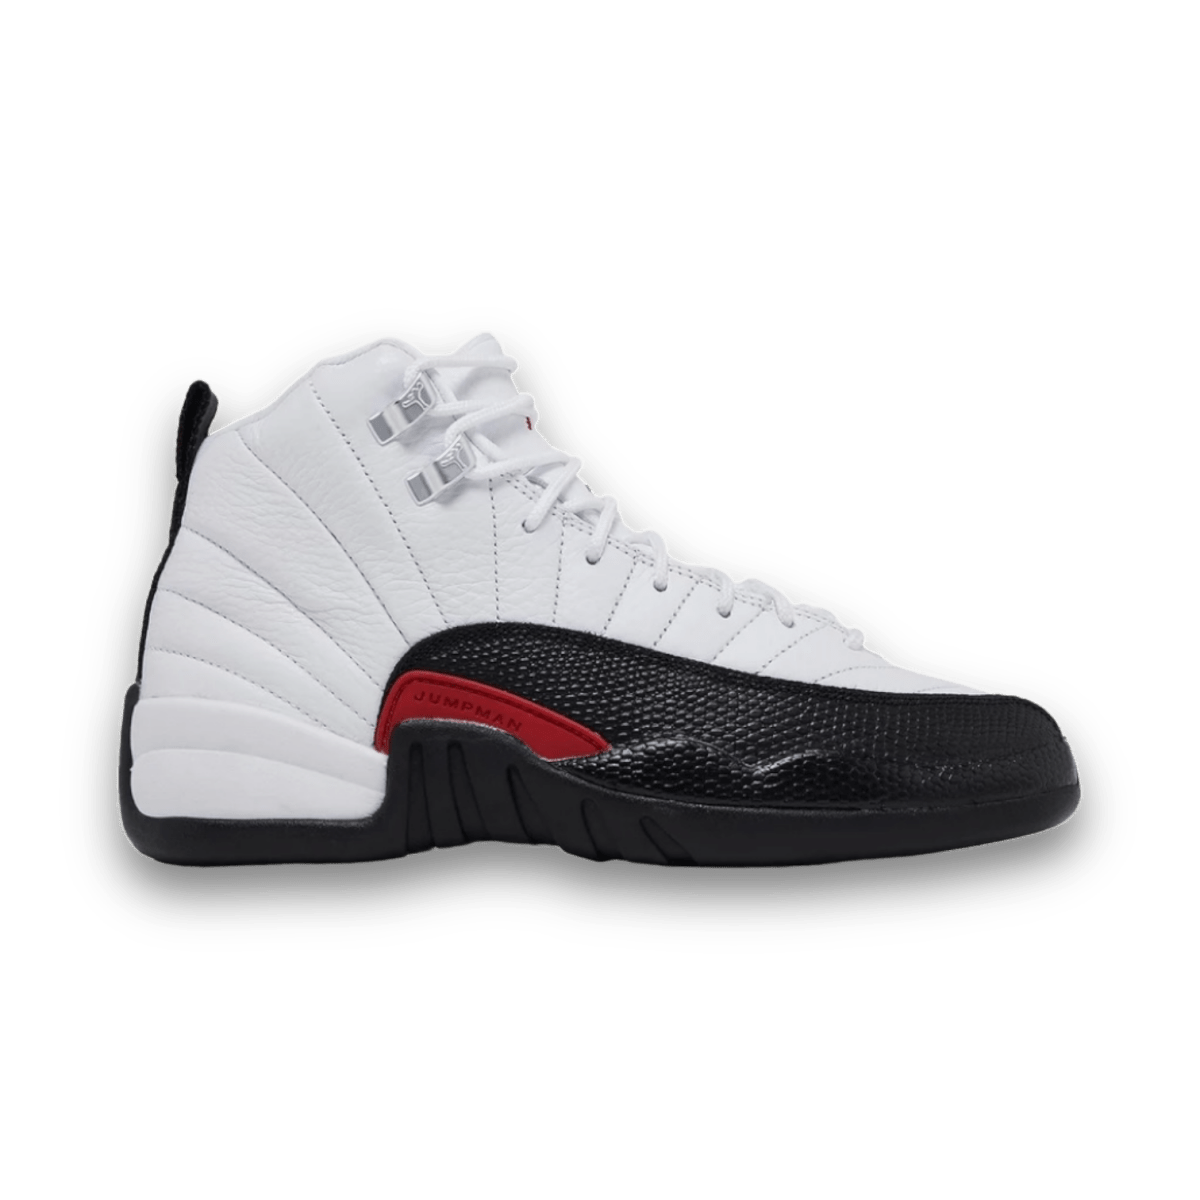 Air Jordan 12 Retro 'Taxi Flip' - Mid Sneaker - Jawns on Fire Sneakers & Streetwear